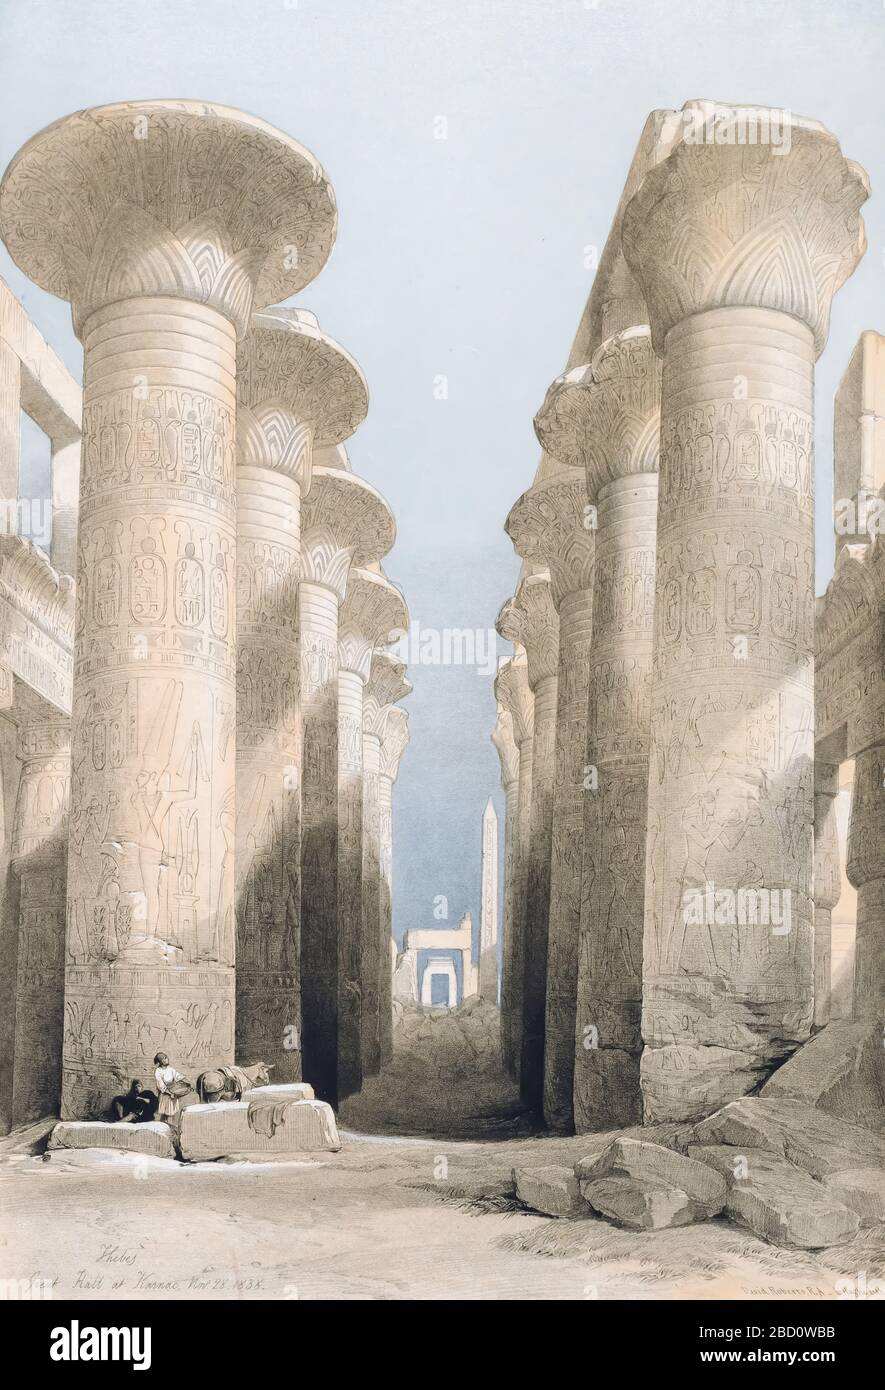 Grand Hall à Karnac (Karnak), Egypte d'Egypte et Nubia, Volume I: Thèbes, Grande salle à Karnac, 1848. Louis Haghe (britannique, 1806-1885), F. G. Moon, 20, rue Threadneedle, Londres, après David Roberts (britannique, 1796-1864). Lithographie couleur; feuille: 60,3 x 42,8 cm (23 3/4 x 16 7/8 po); image: 48 x 32,7 cm (18 7/8 x 12 7/8 po). Banque D'Images